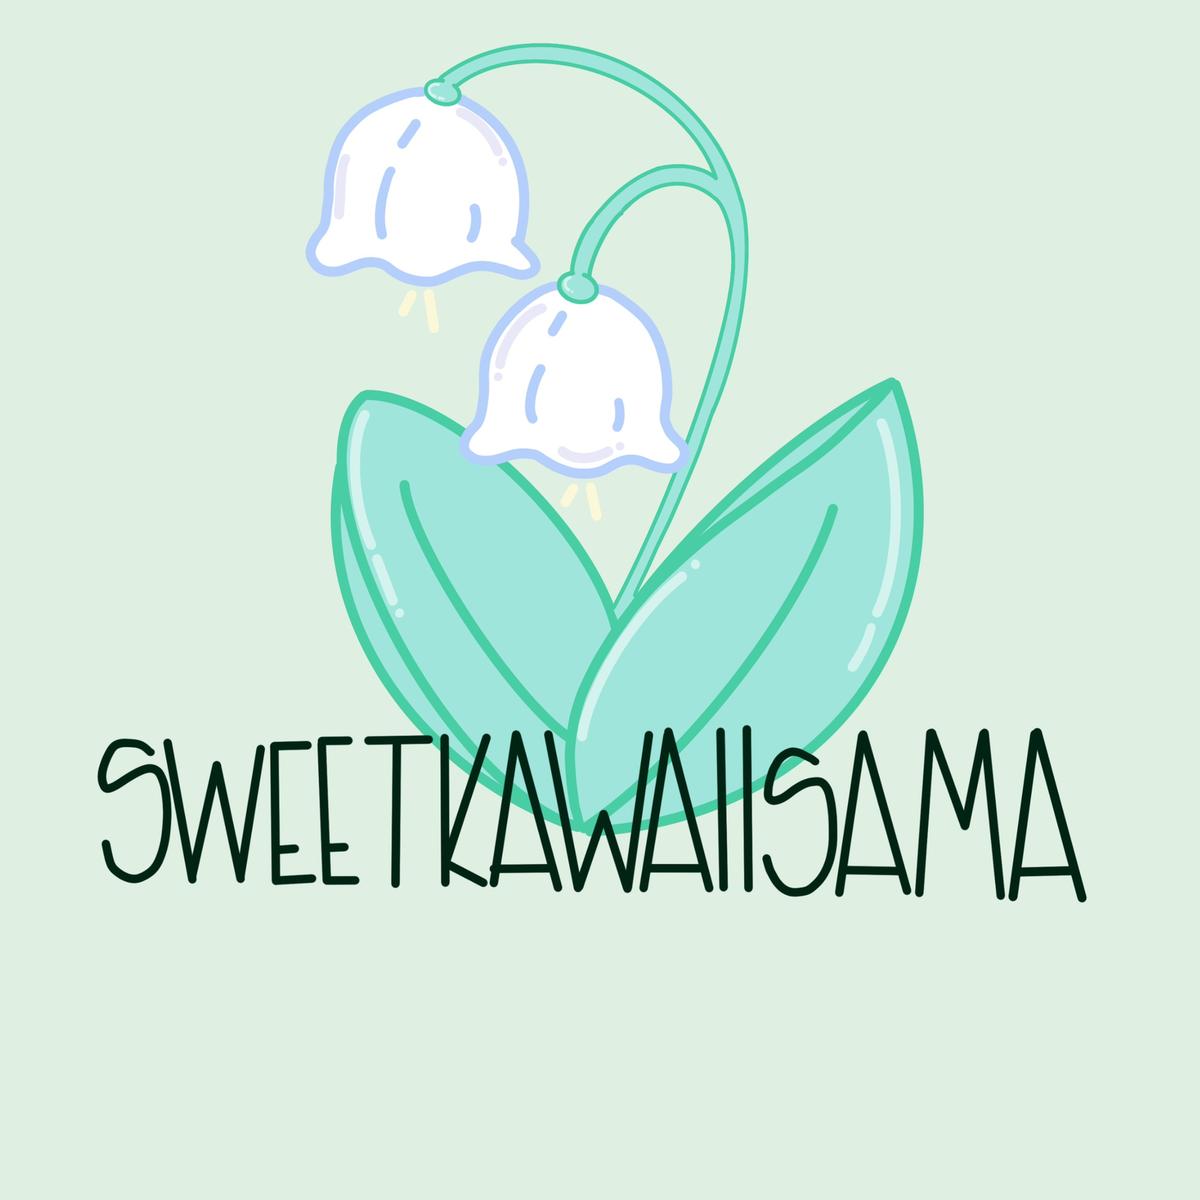 SweetKawaiiSama's images